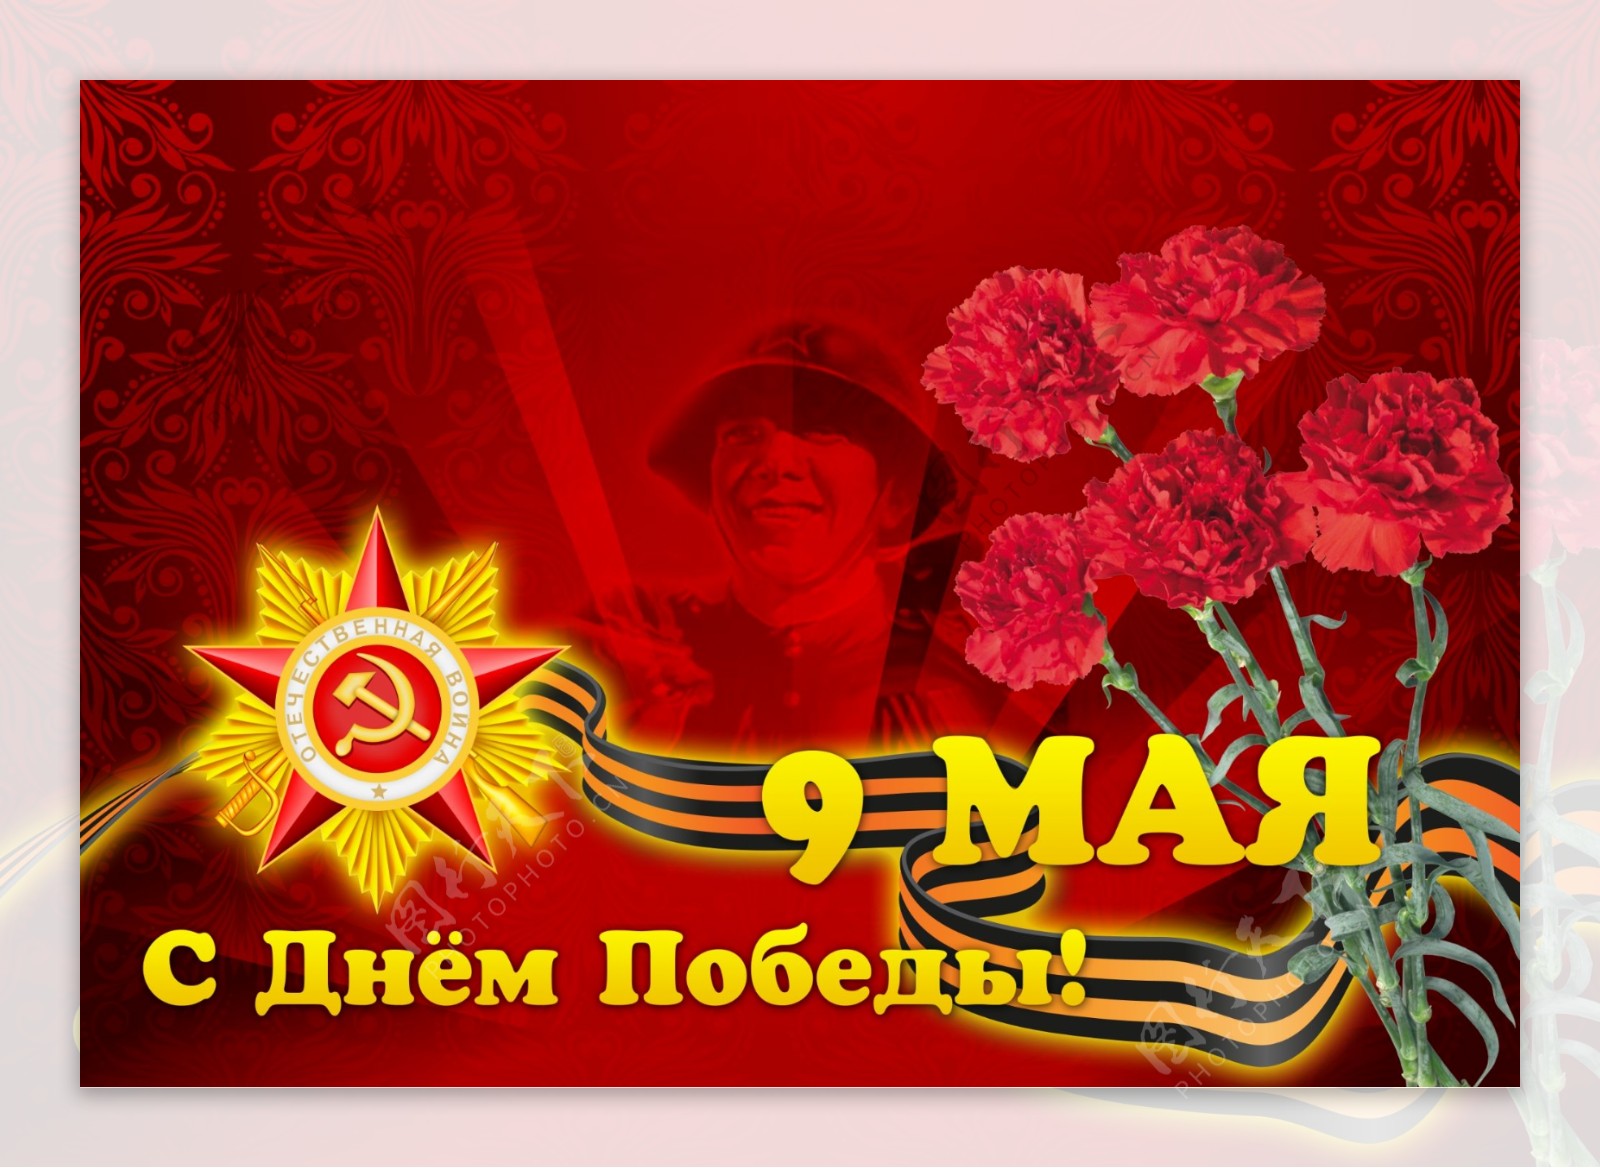 共产党党徽